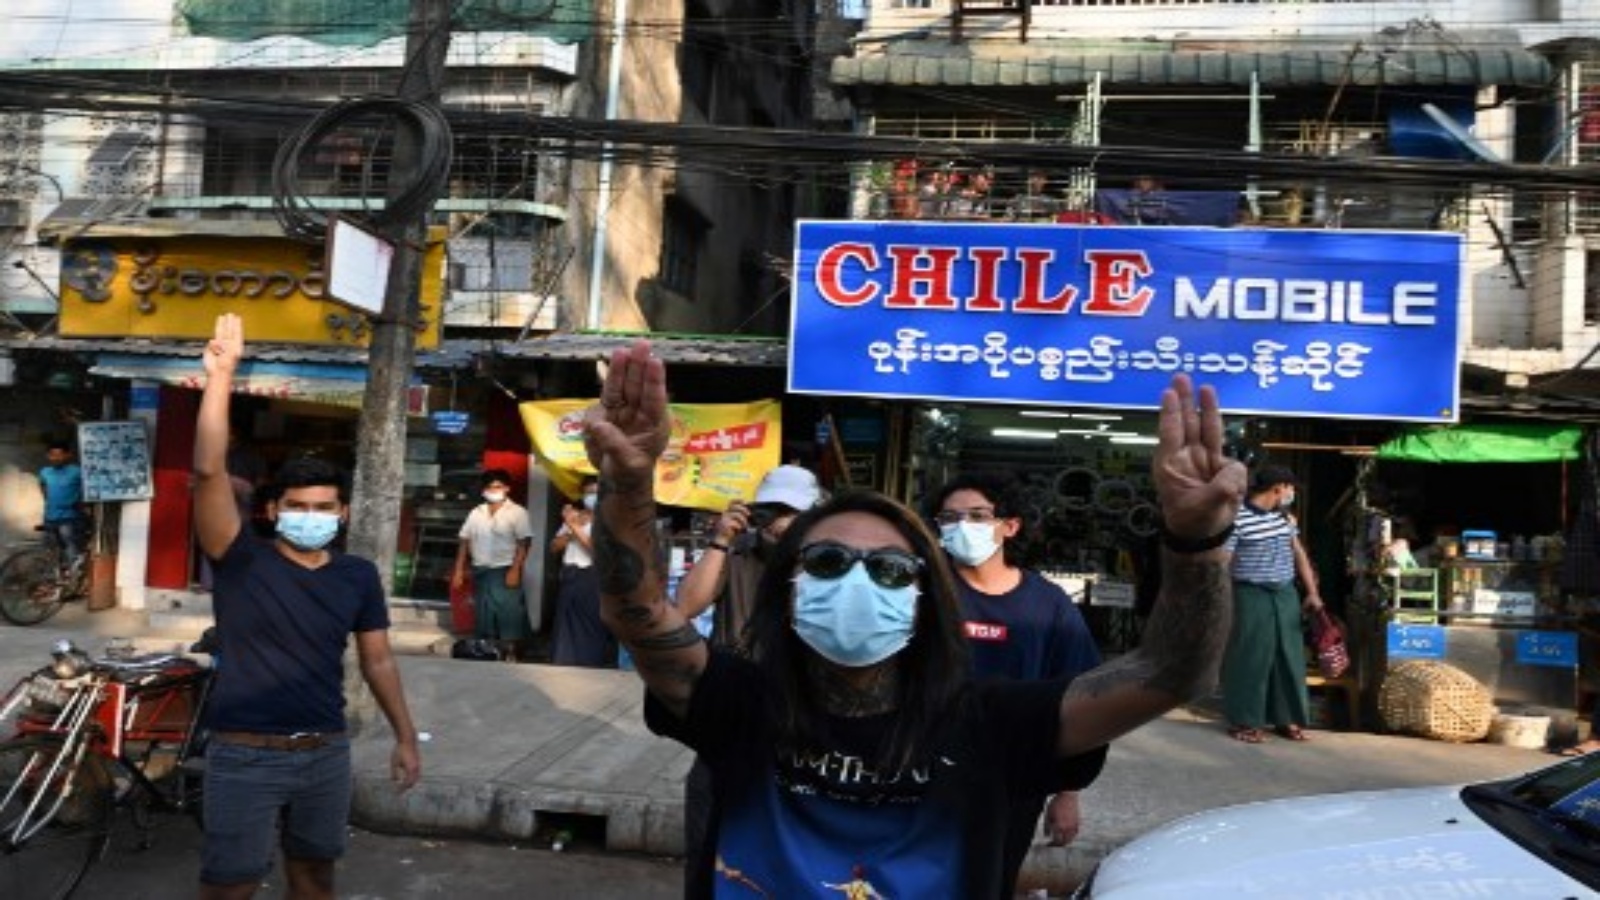 النمحتجون اس يرفعون التحية بثلاثة أصابع ، بعد ظهور دعوات للاحتجاج على الانقلاب العسكري على وسائل التواصل الاجتماعي ، في يانغون في 4 فبراير 2021.